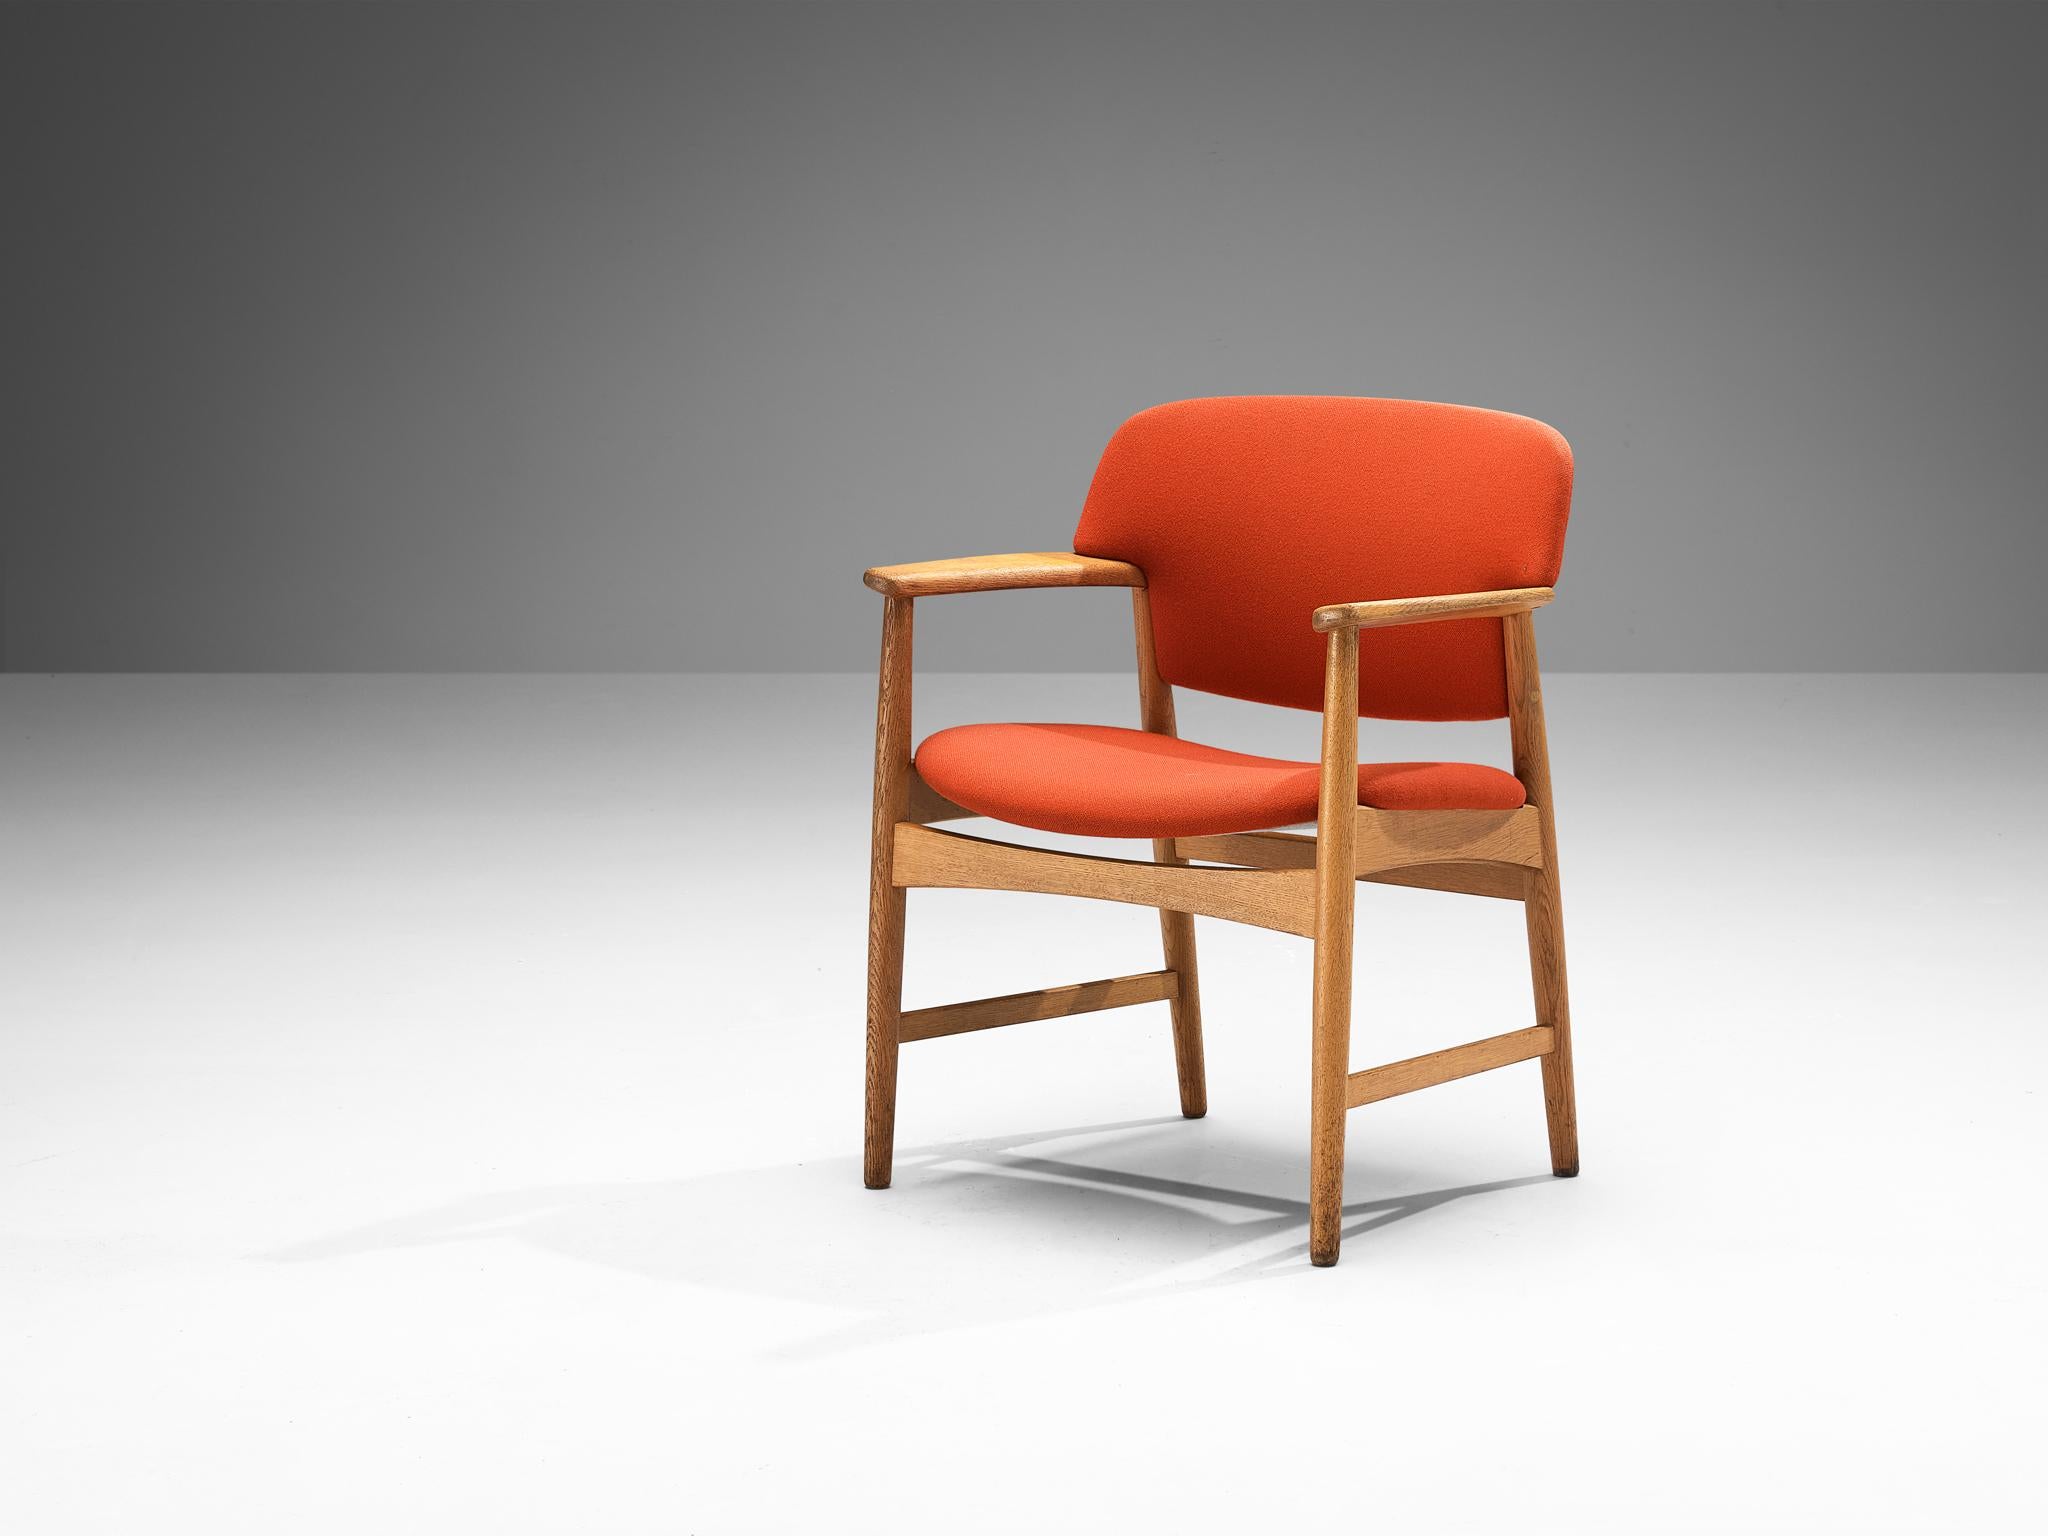 Einar Larsen & Aksel Bender-Madsen pour Fritz Hansen, modèle 4205, tapisserie orange, chêne, Danemark, années 1950

Cette large chaise de salle à manger est exécutée avec un dossier arrondi. La chaise est dotée d'un cadre en chêne blond et de bords